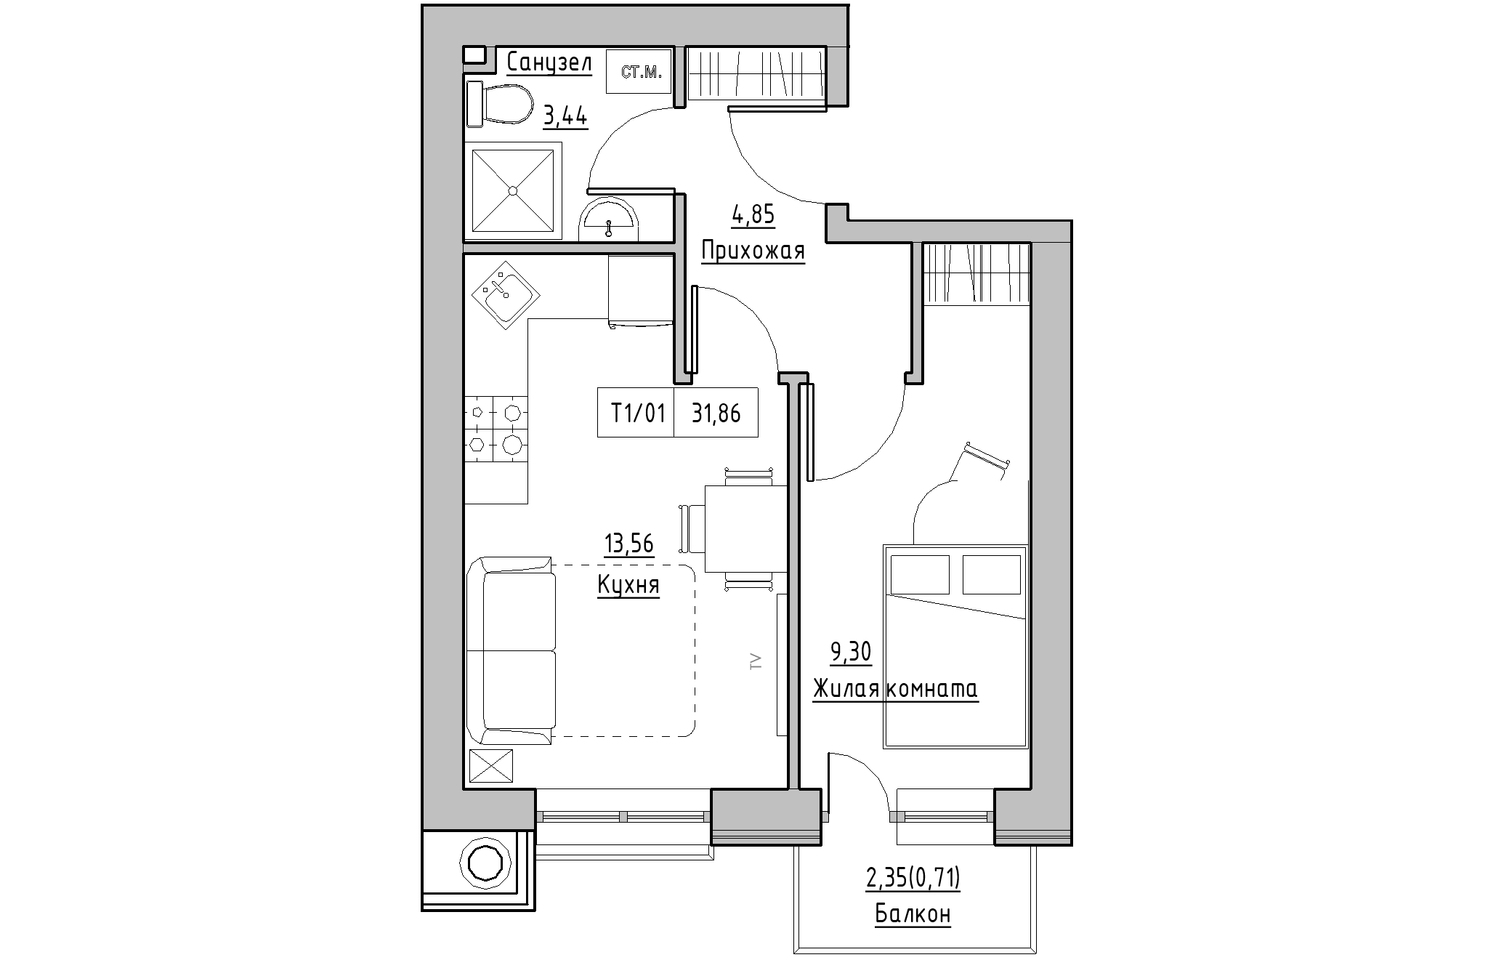 Планування 1-к квартира площею 31.86м2, KS-010-02/0003.